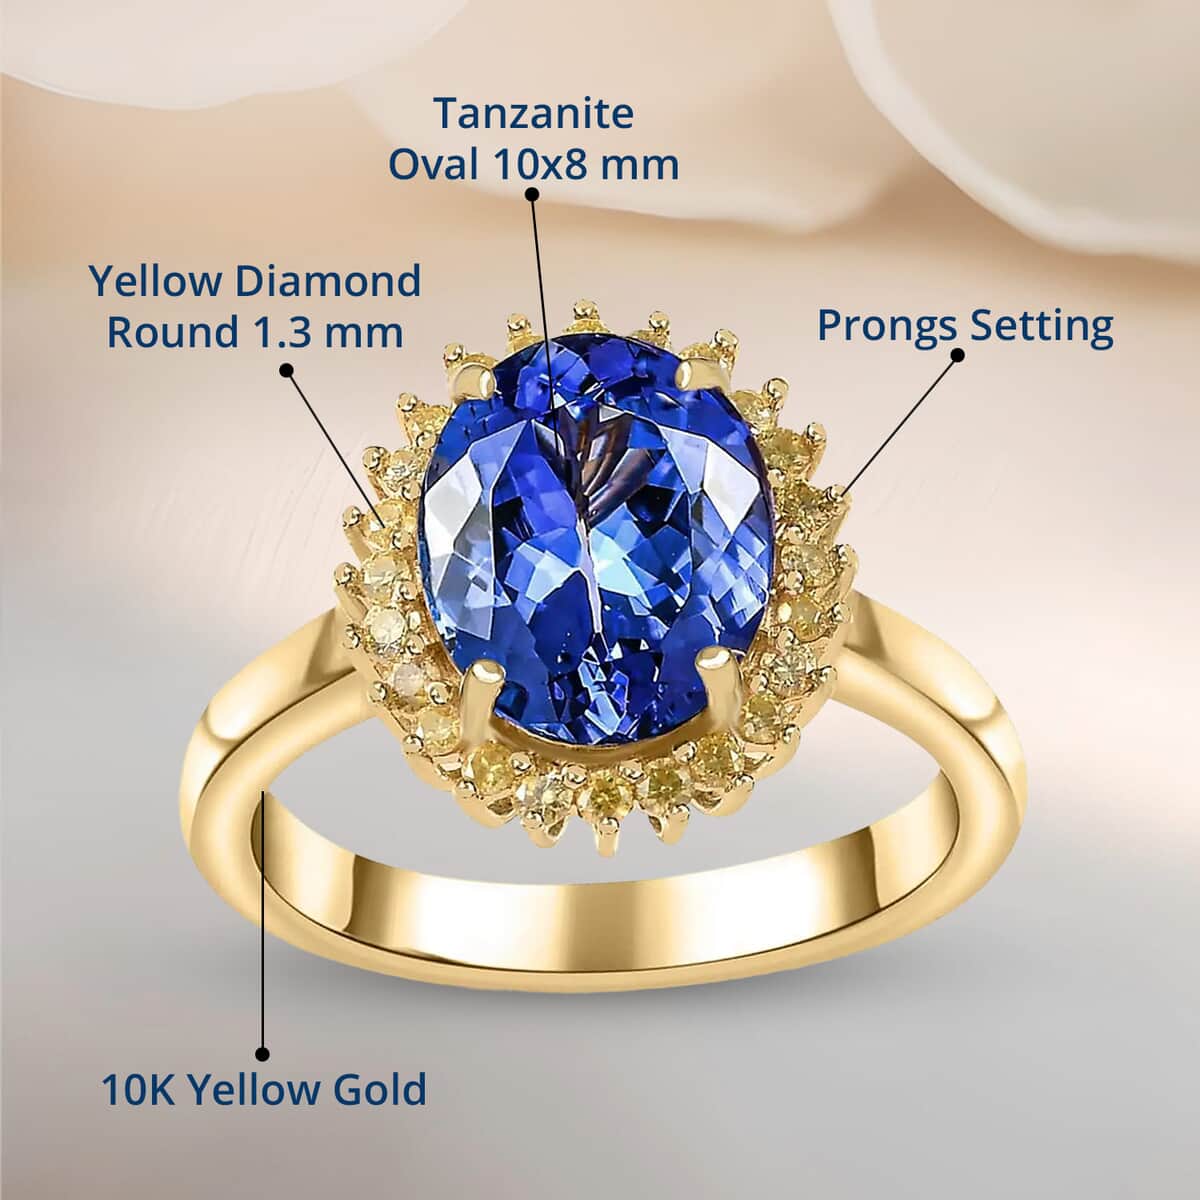 Luxoro 10K Yellow Gold Premium Tanzanite and I3 Natural Yellow Diamond Sunburst Ring (Size 10.0) 3.00 ctw image number 4